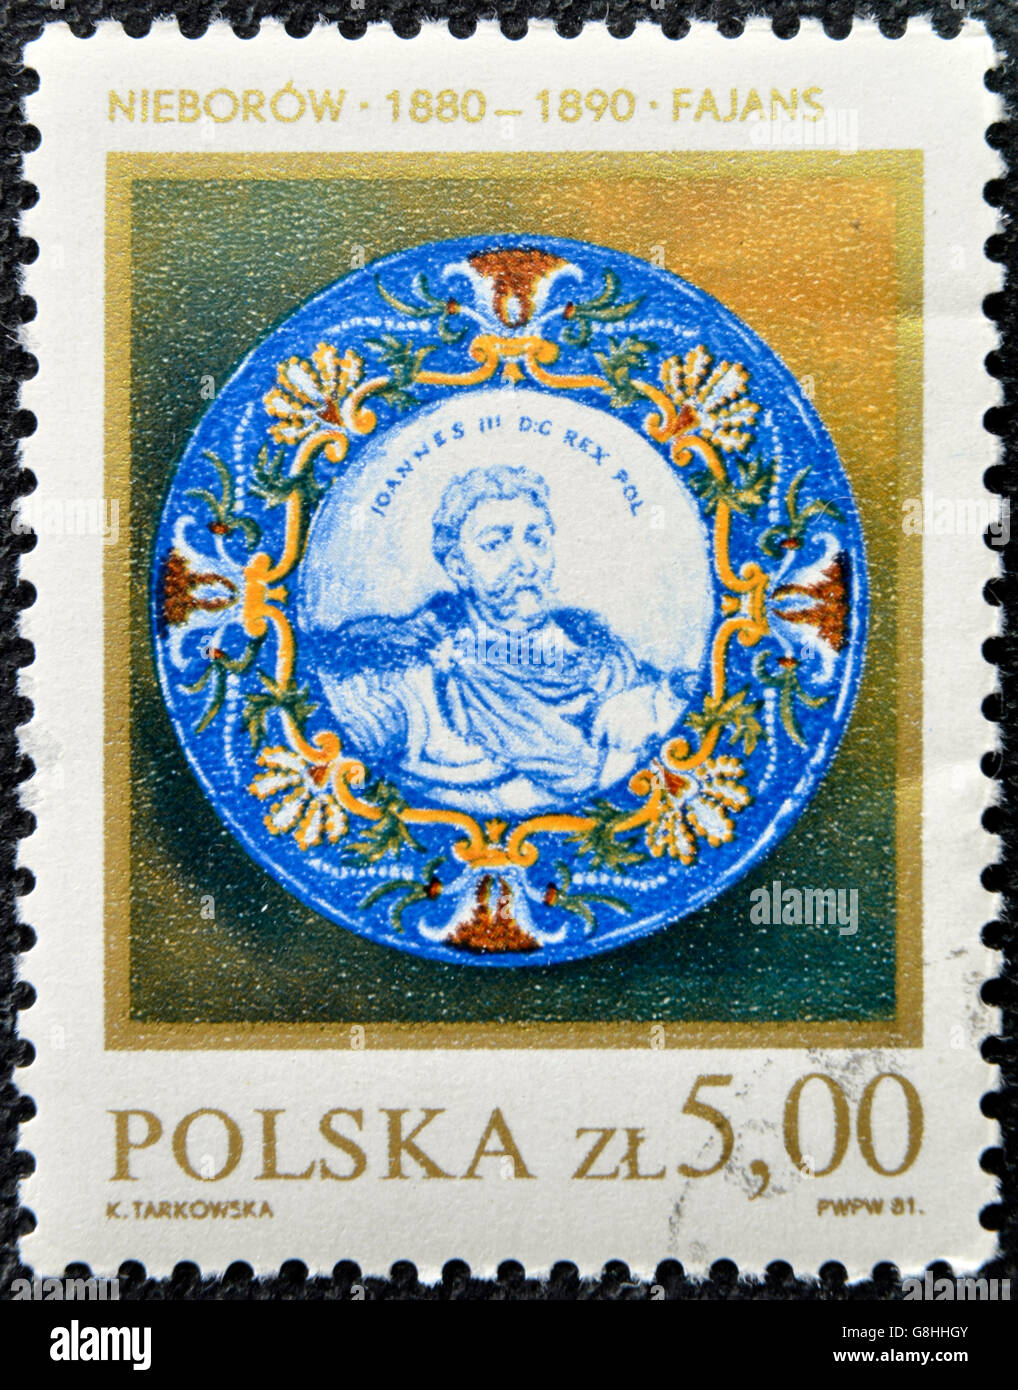 POLAND - CIRCA 1981: A stamp printed in Poland shows Polish pottery, circa 1981. Stock Photo